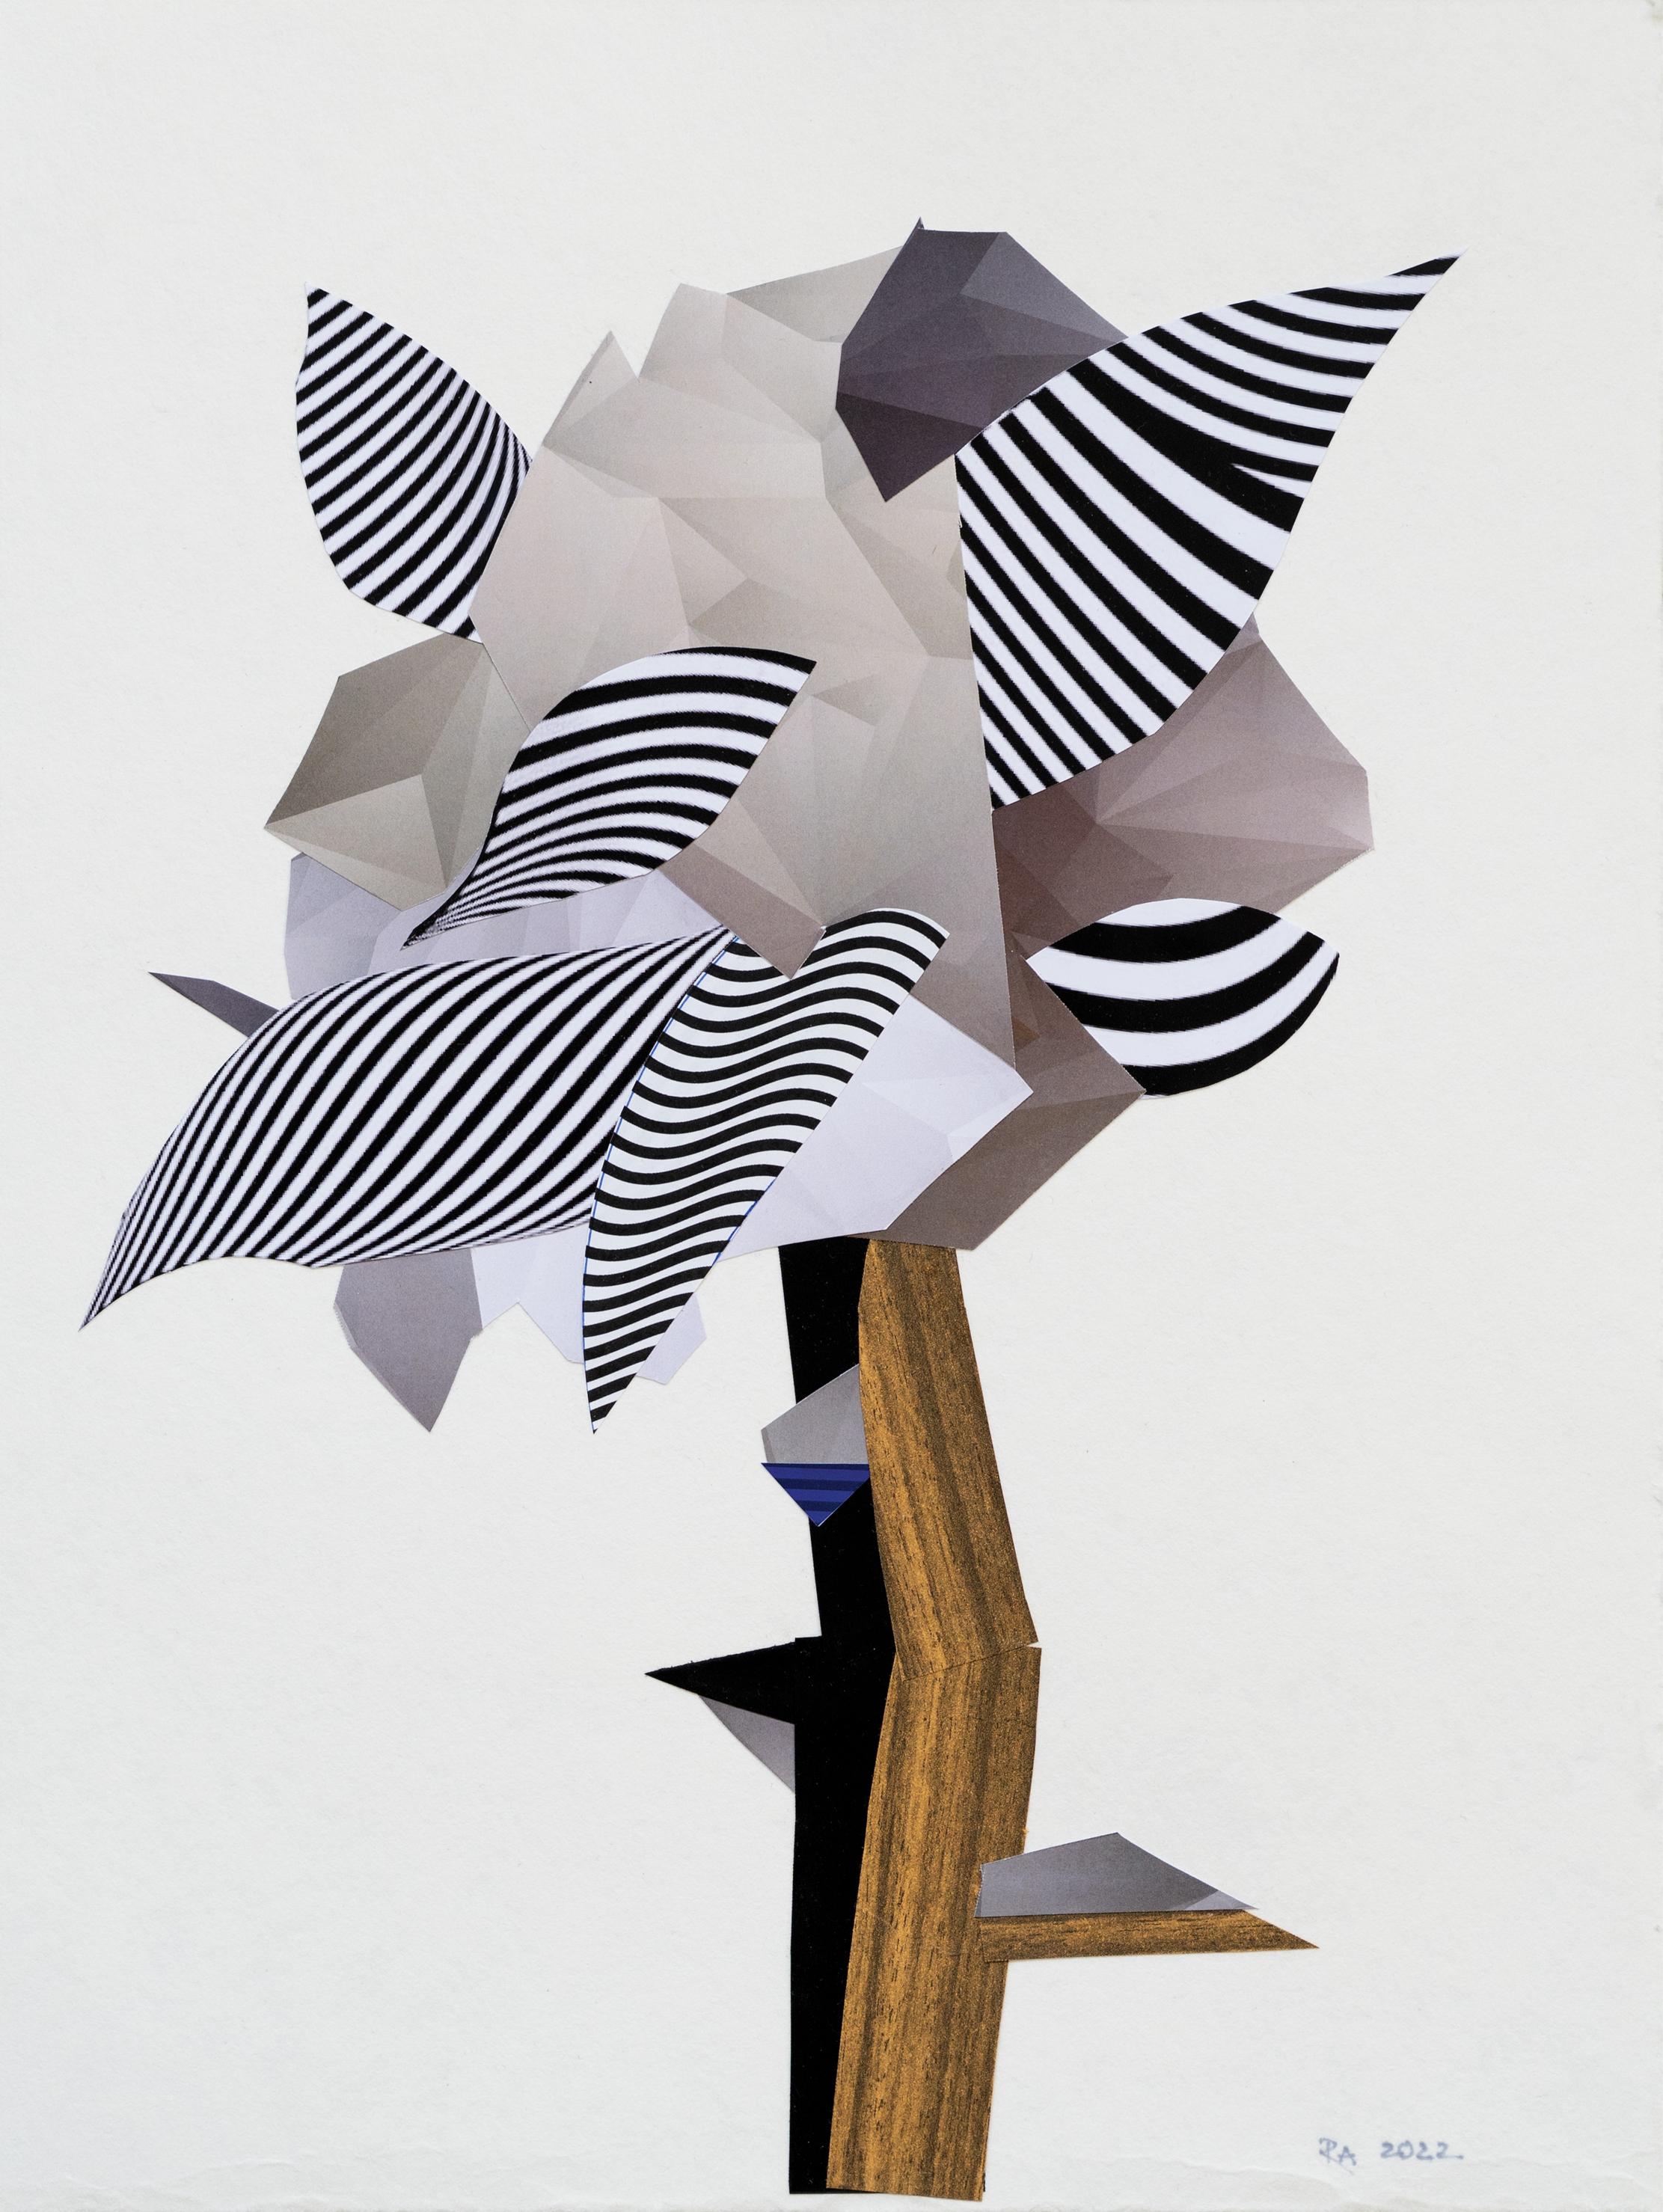 Baum II – Landschaft, Weiß, Schwarz, Papier, Collage – Mixed Media Art von Raluca Arnăutu